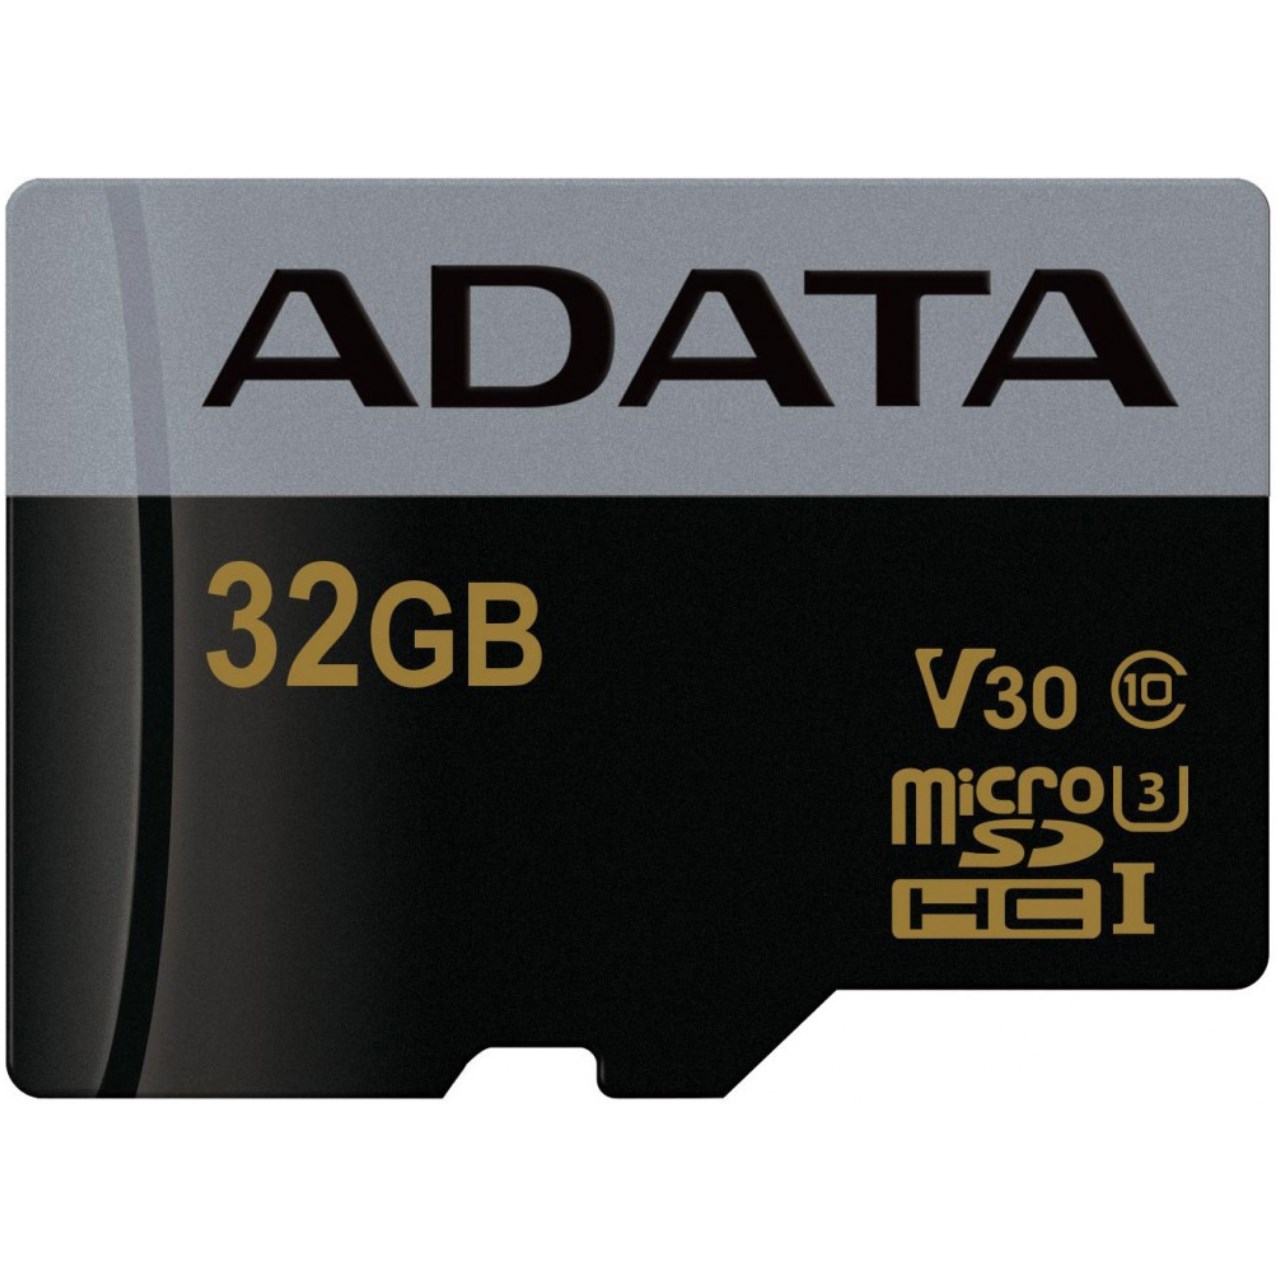 کارت حافظه microSDHC ای دیتا مدل Premier Pro V30 کلاس 10 استاندارد UHS-I U3 سرعت 95MBps ظرفیت 32 گیگابایت